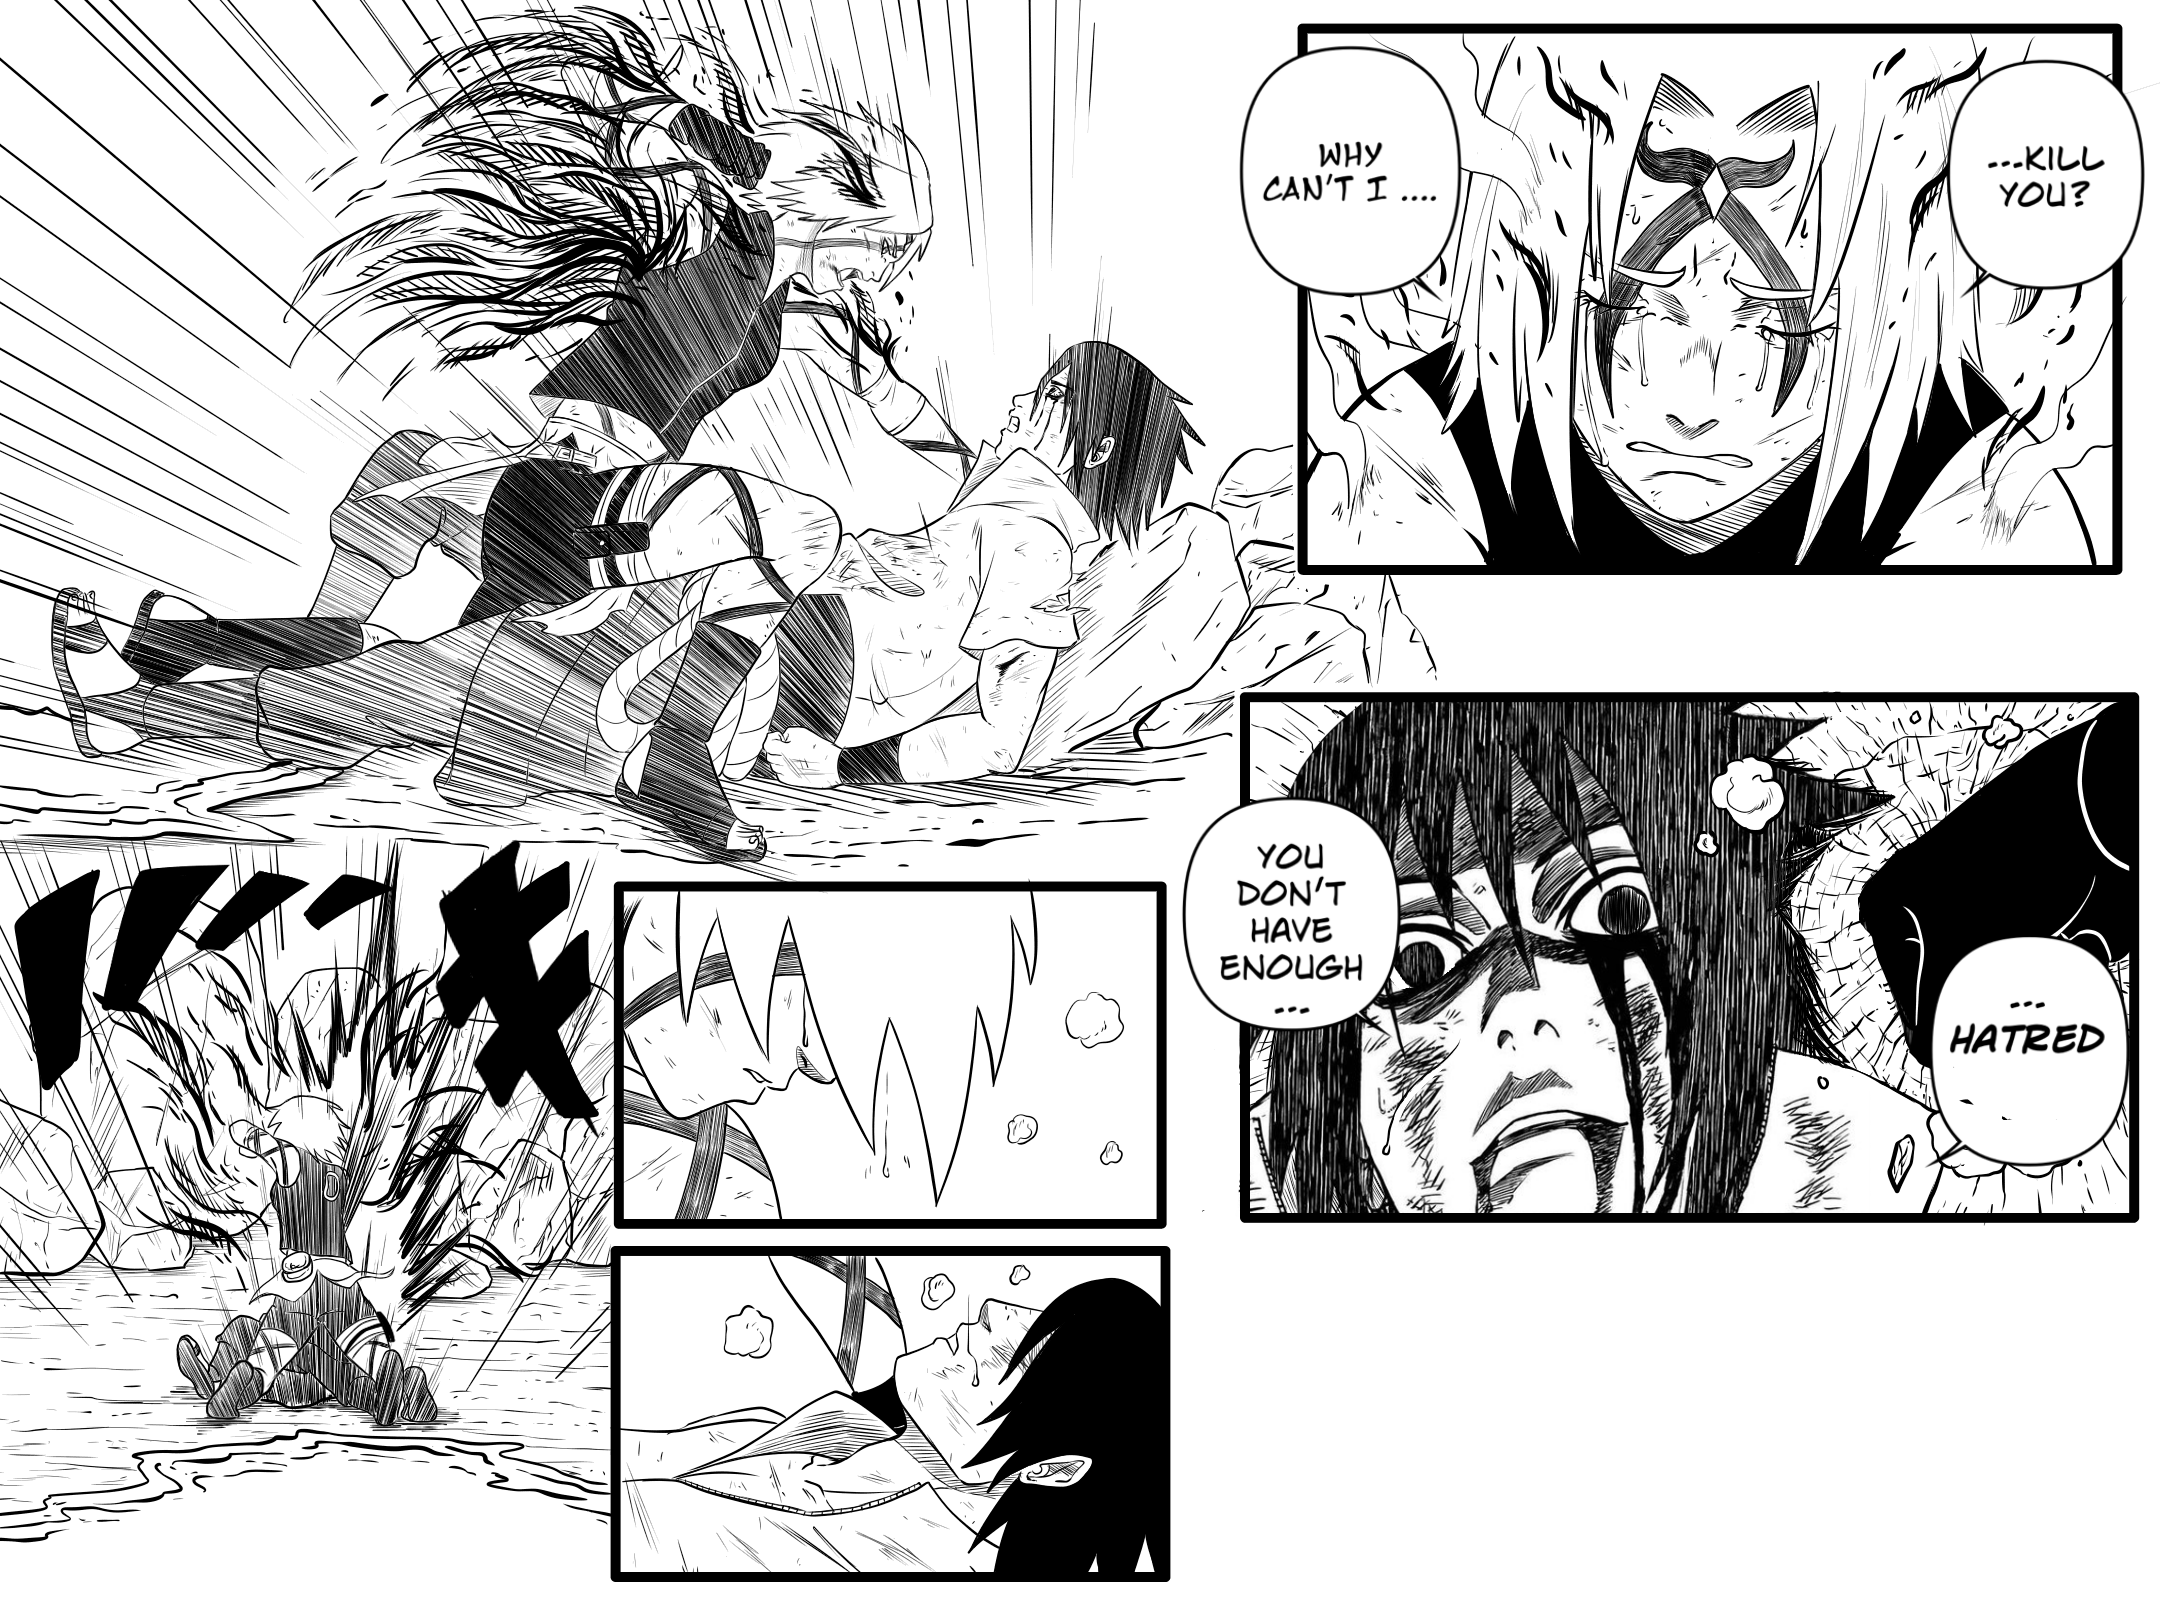 Sasuke vs Sakura by ioana24 on DeviantArt